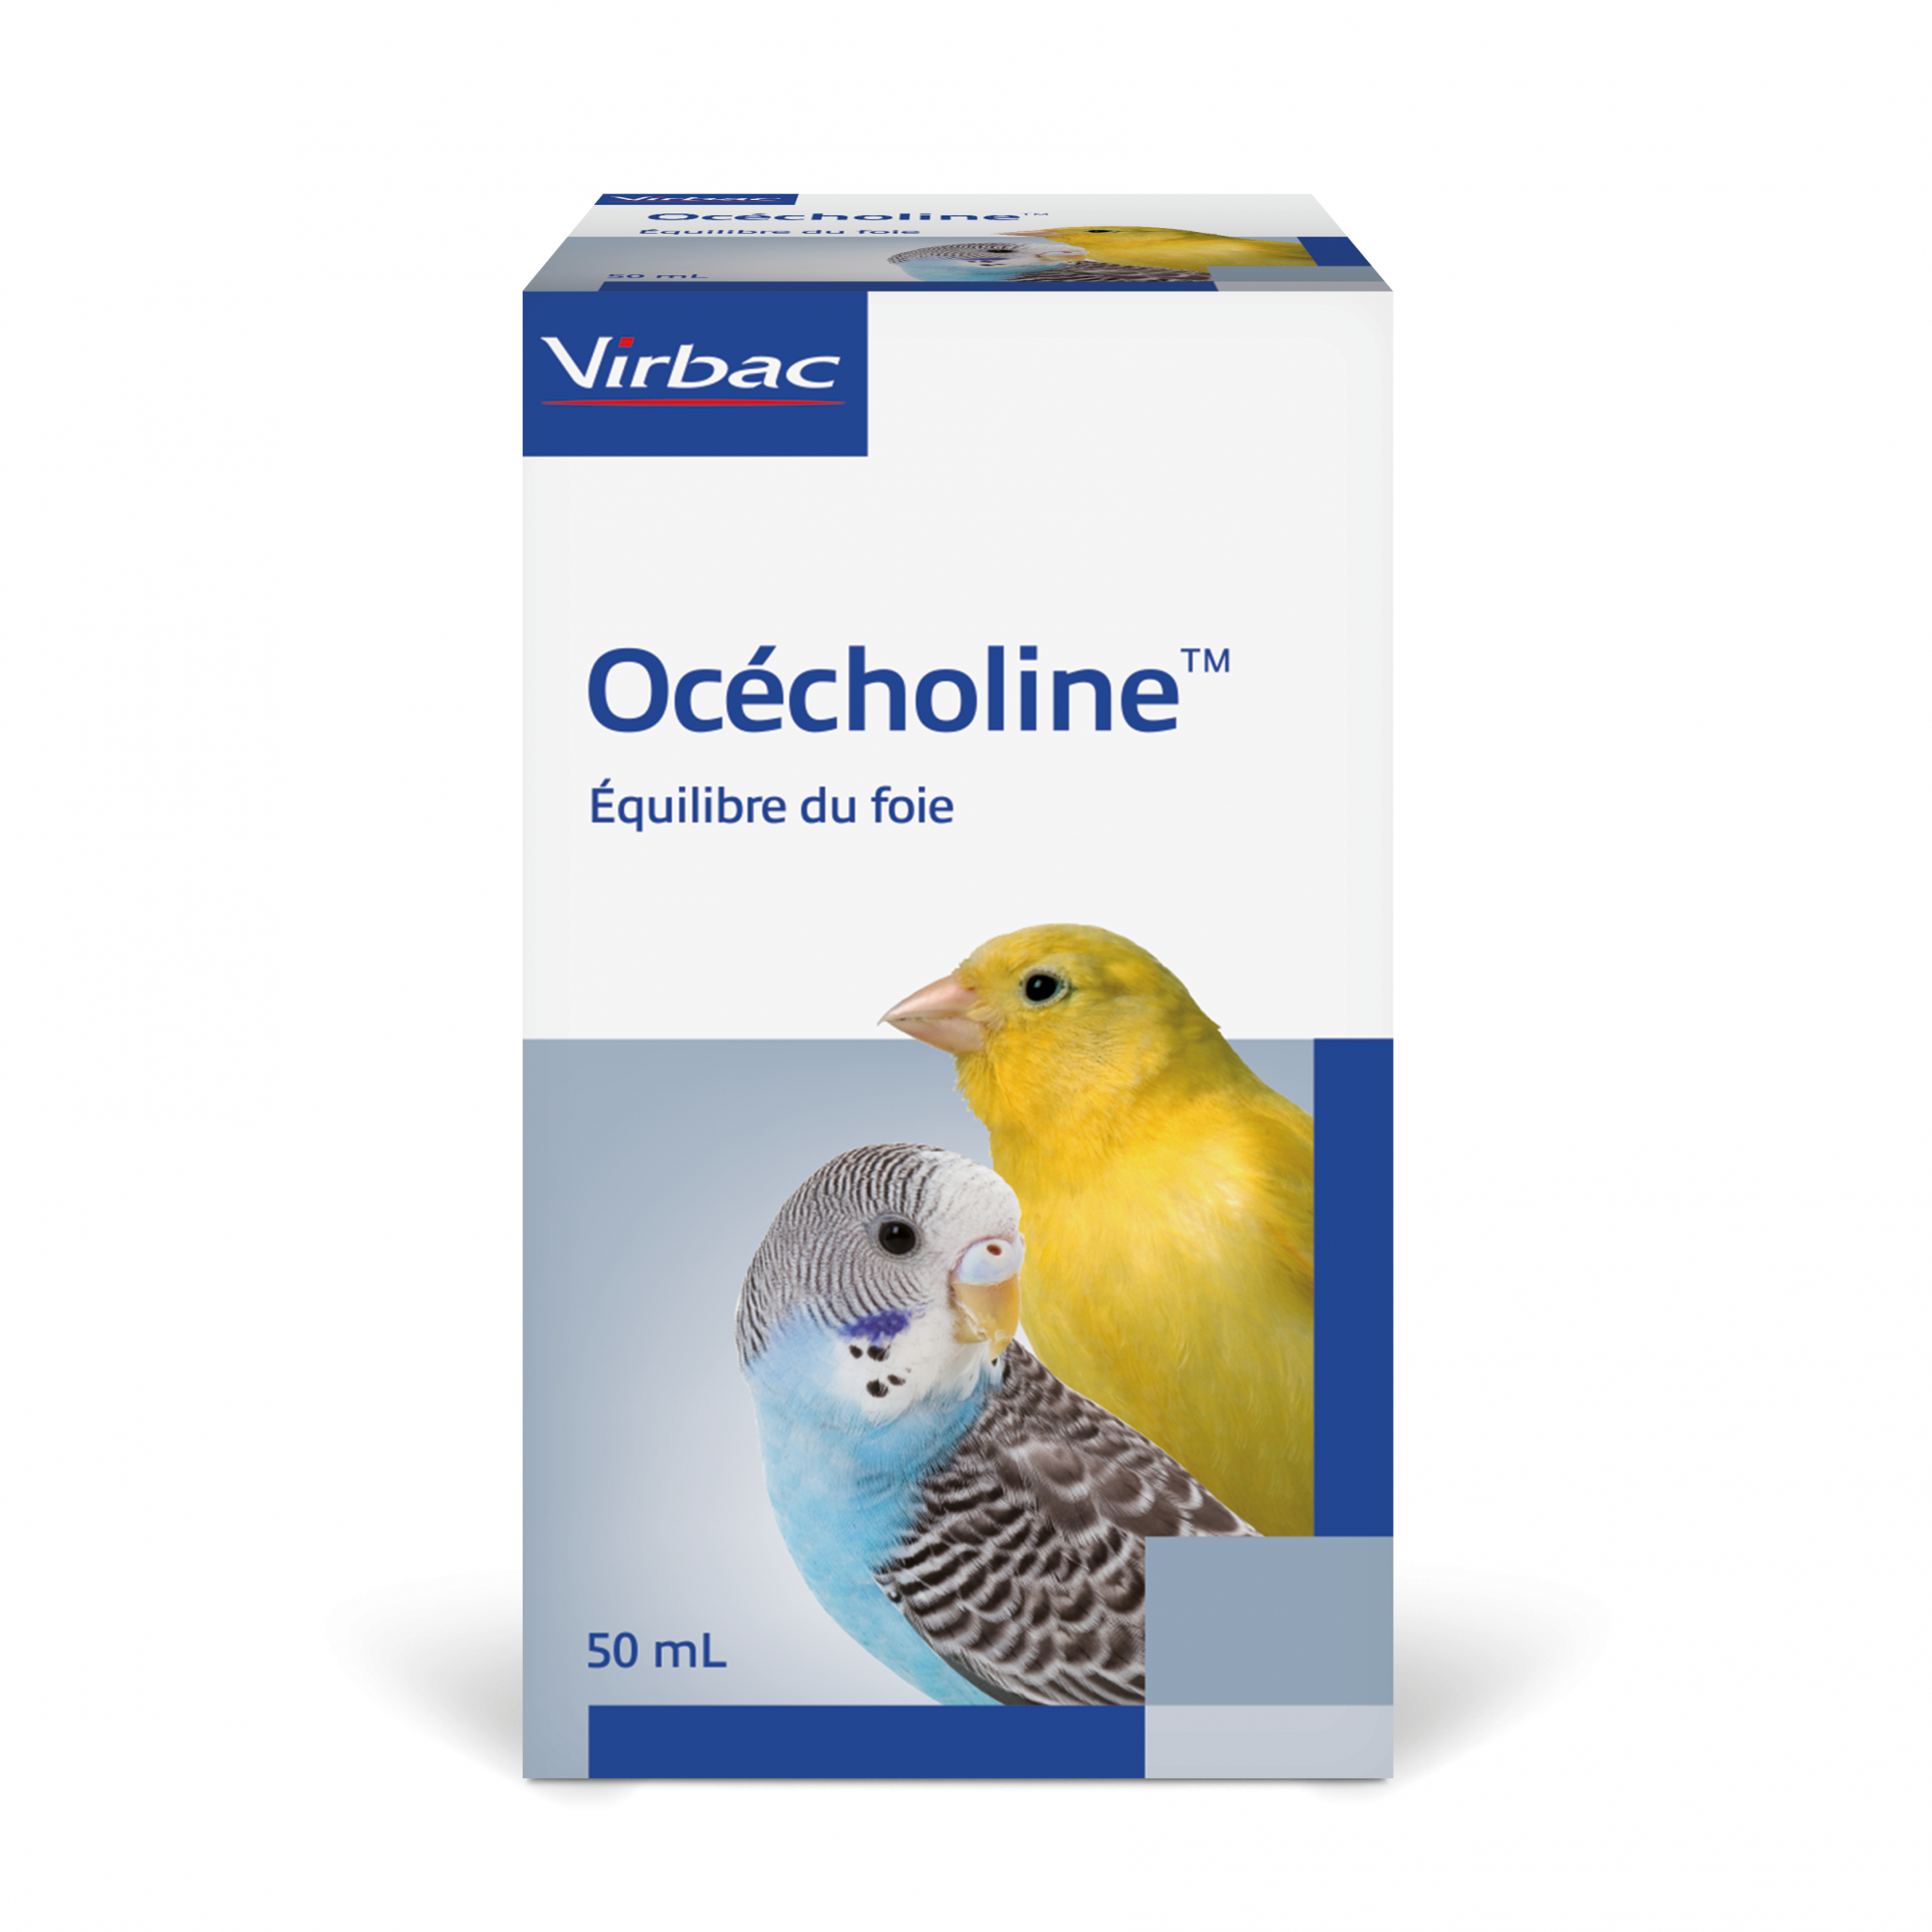 Virbac Ocecholine - Limita a infiltração de gordura no fígado